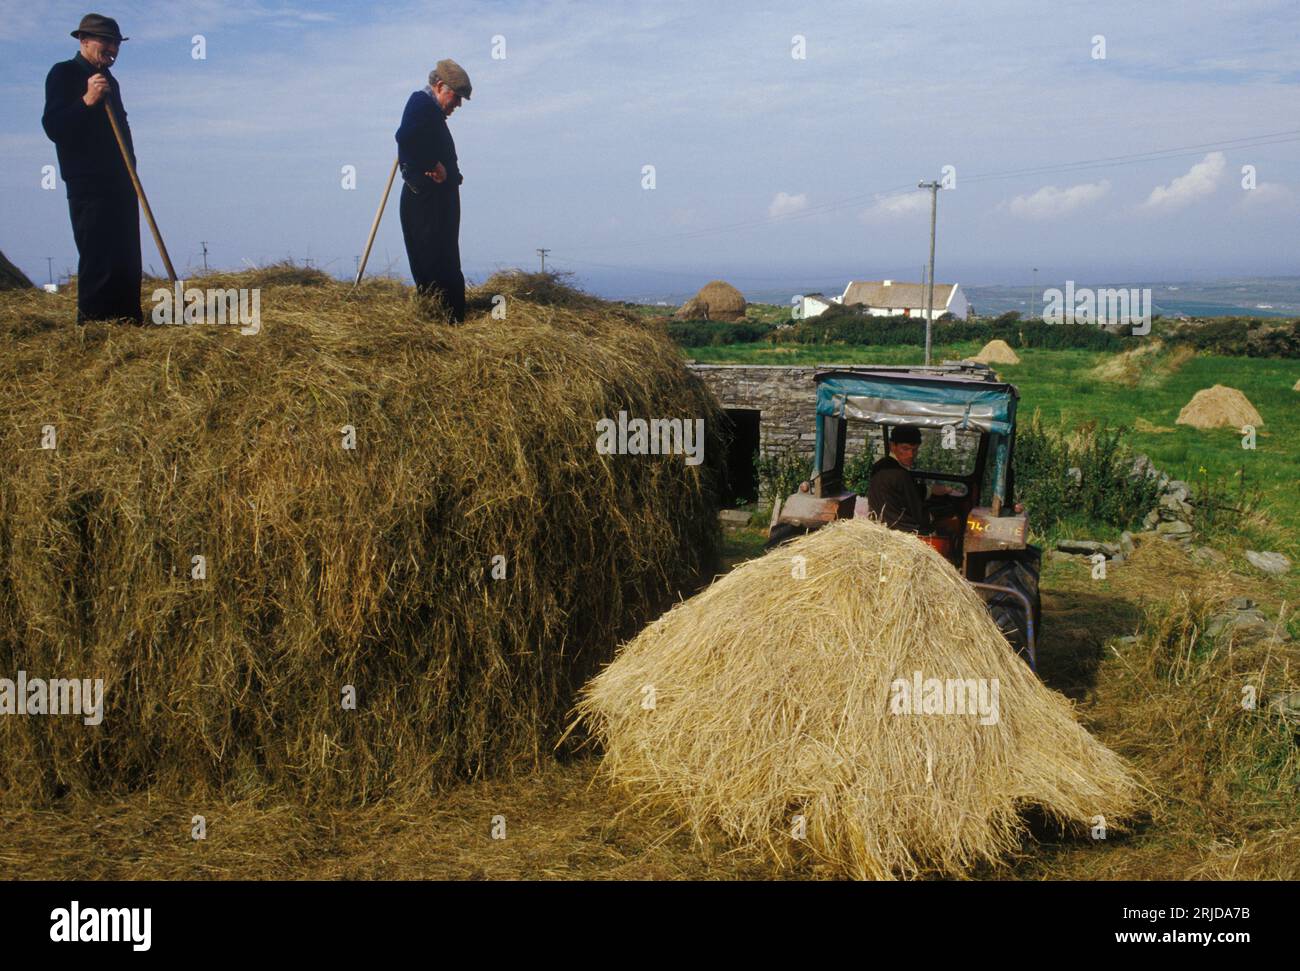 Agriculture rurale côte ouest du sud de l'Irlande des années 1970. Trois agriculteurs construisant une botte de foin.Southern Ireland County Kerry, Eire 1970s. HOMER SYKES. Banque D'Images